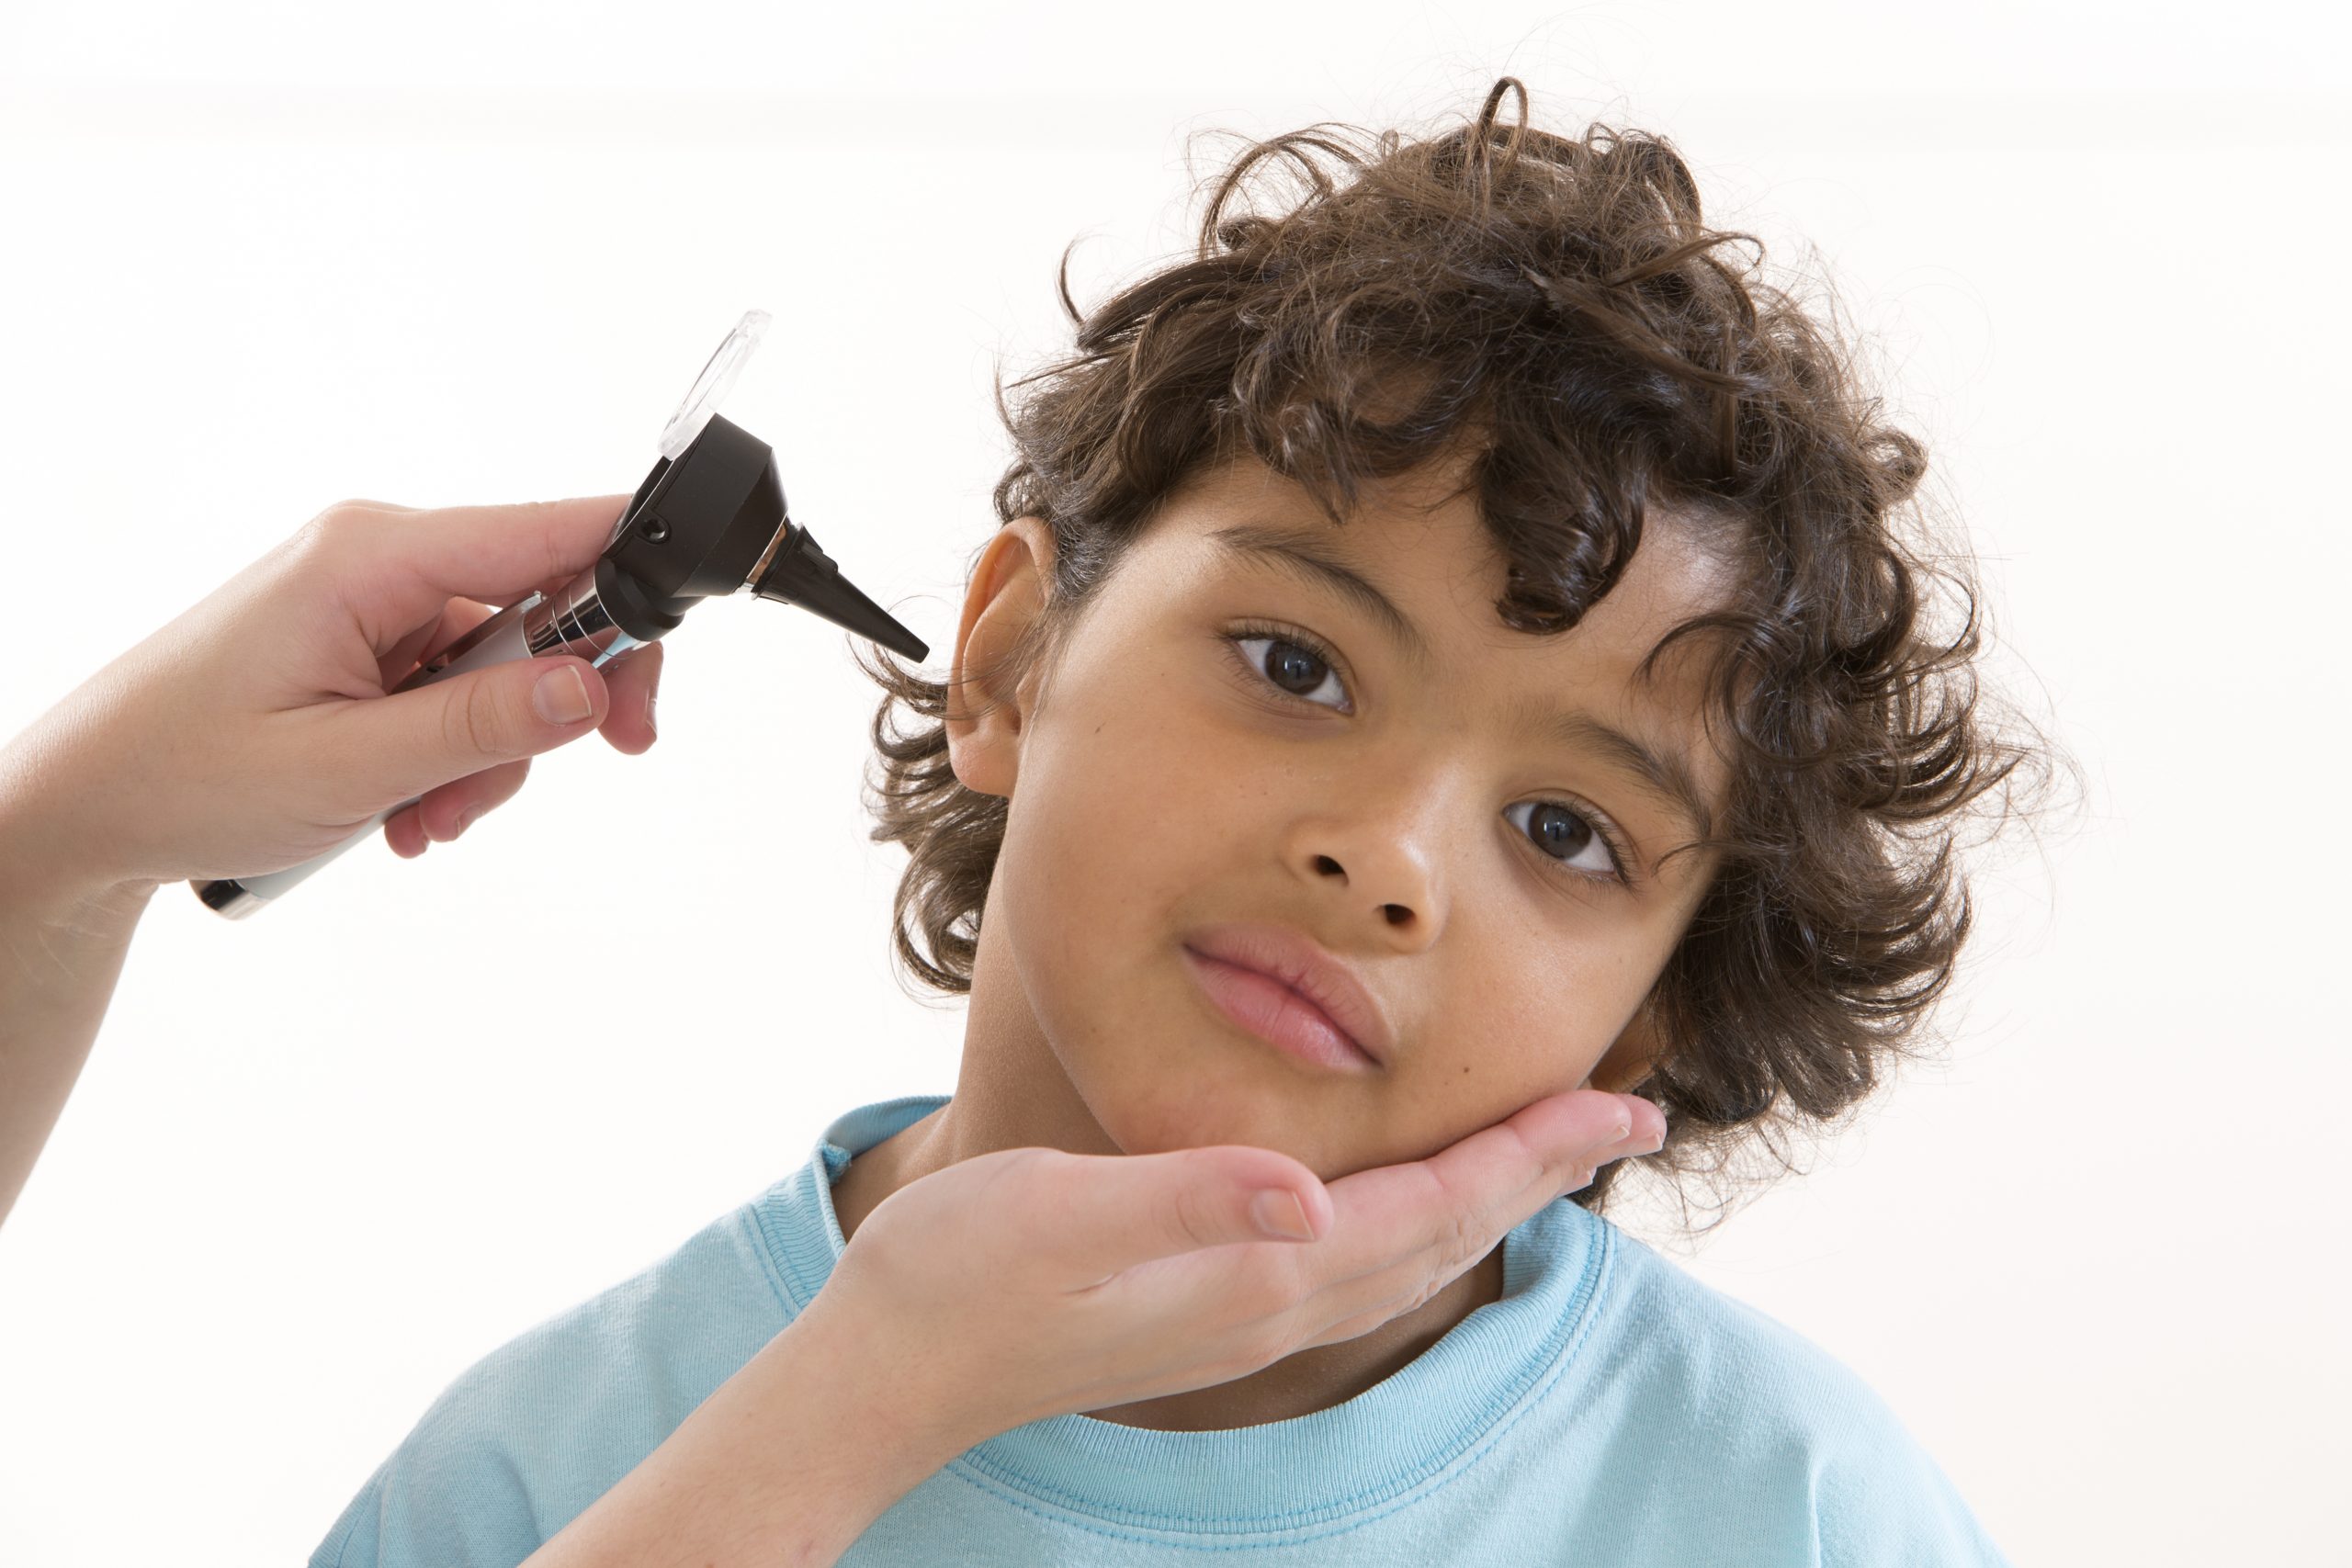 Douleur aux oreilles : mon enfant a-t-il une otite ? Conseils Santé